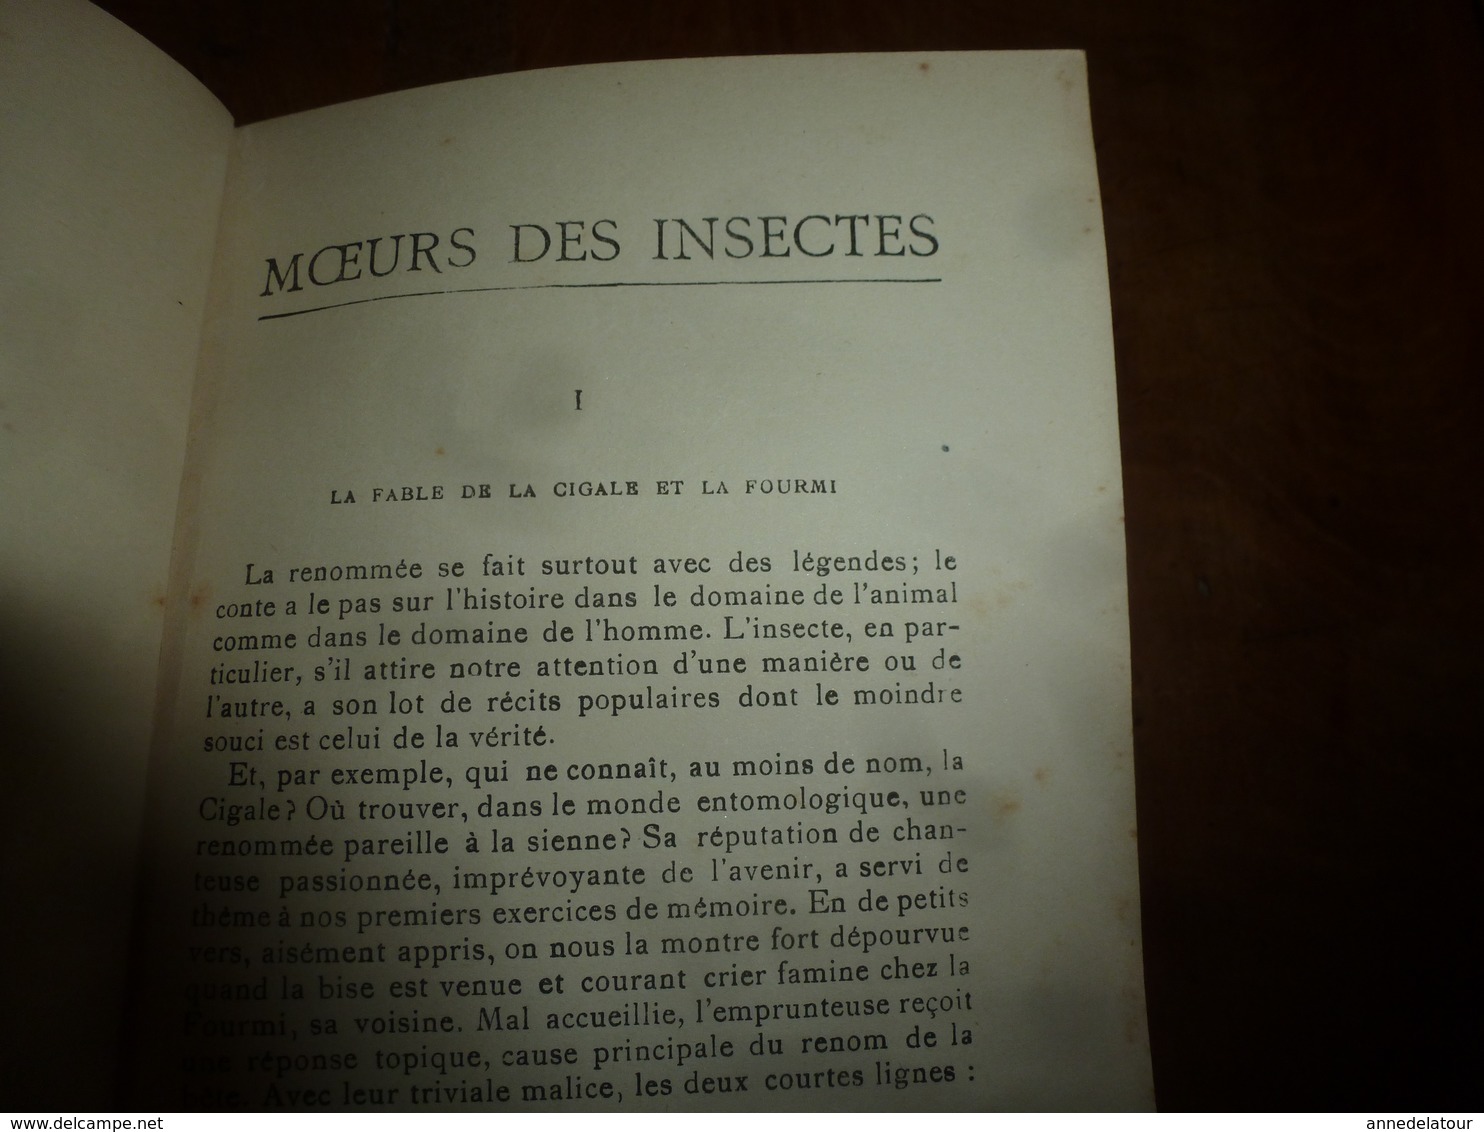 Entomologie par J. H. FABRE - Mœurs des insectes - avec 16 planches hors-texte